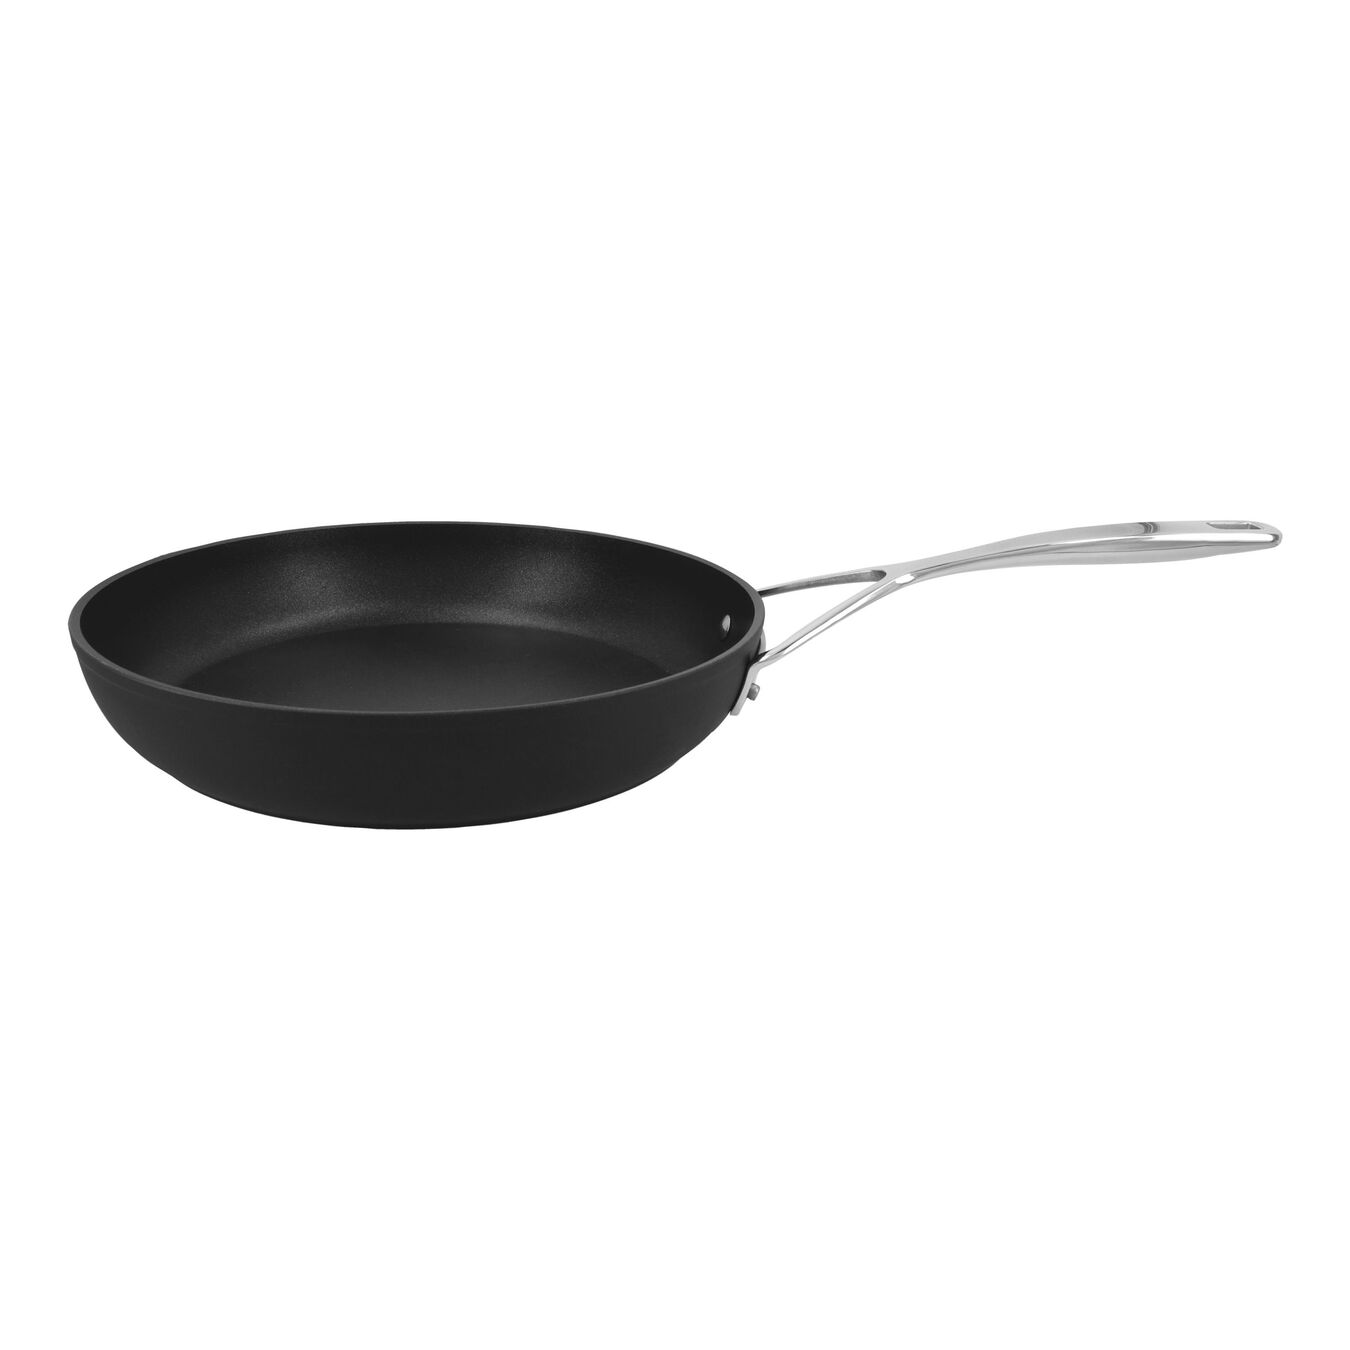 28 cm Aluminium Frying pan silver-black,,large 1